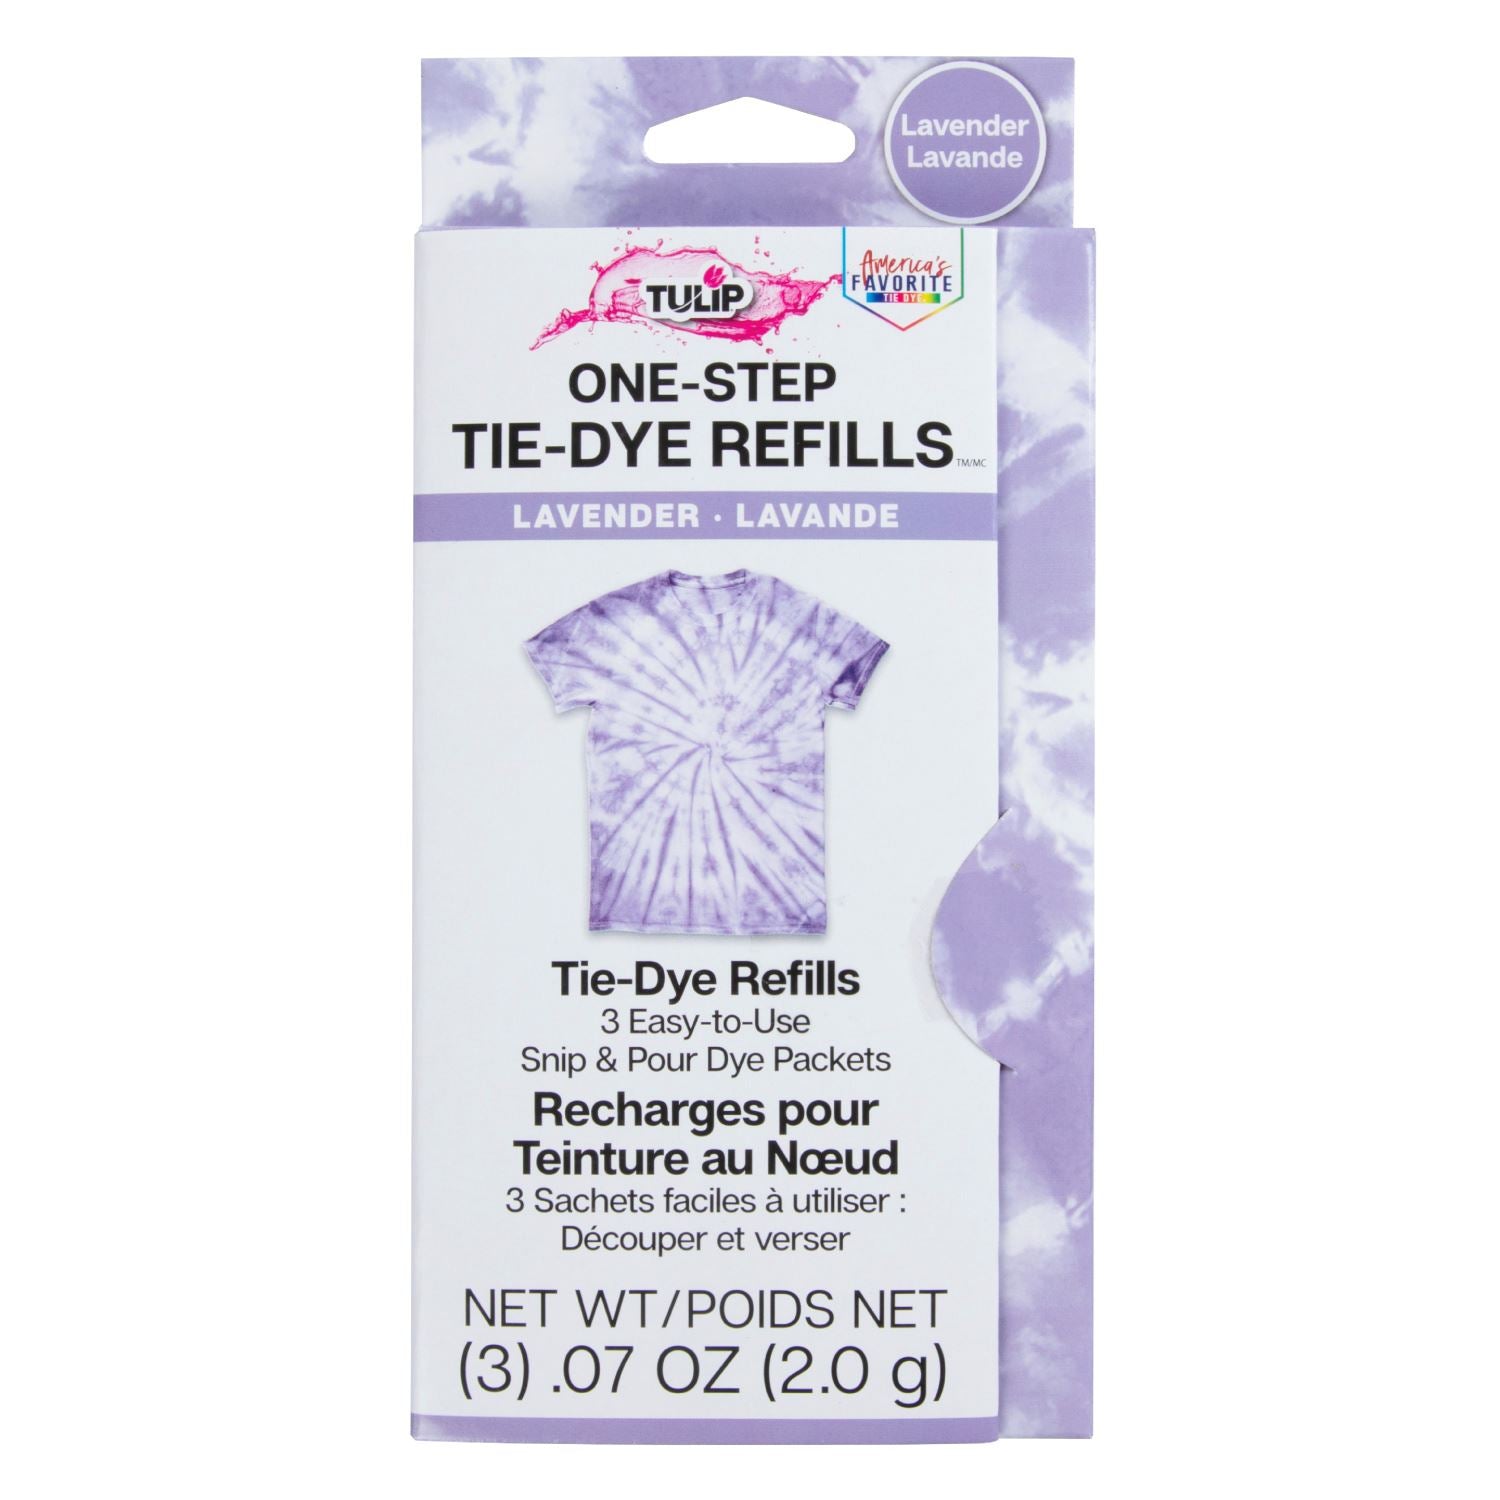 Tulip One-Step Tie-Dye Refills Lavender - 1